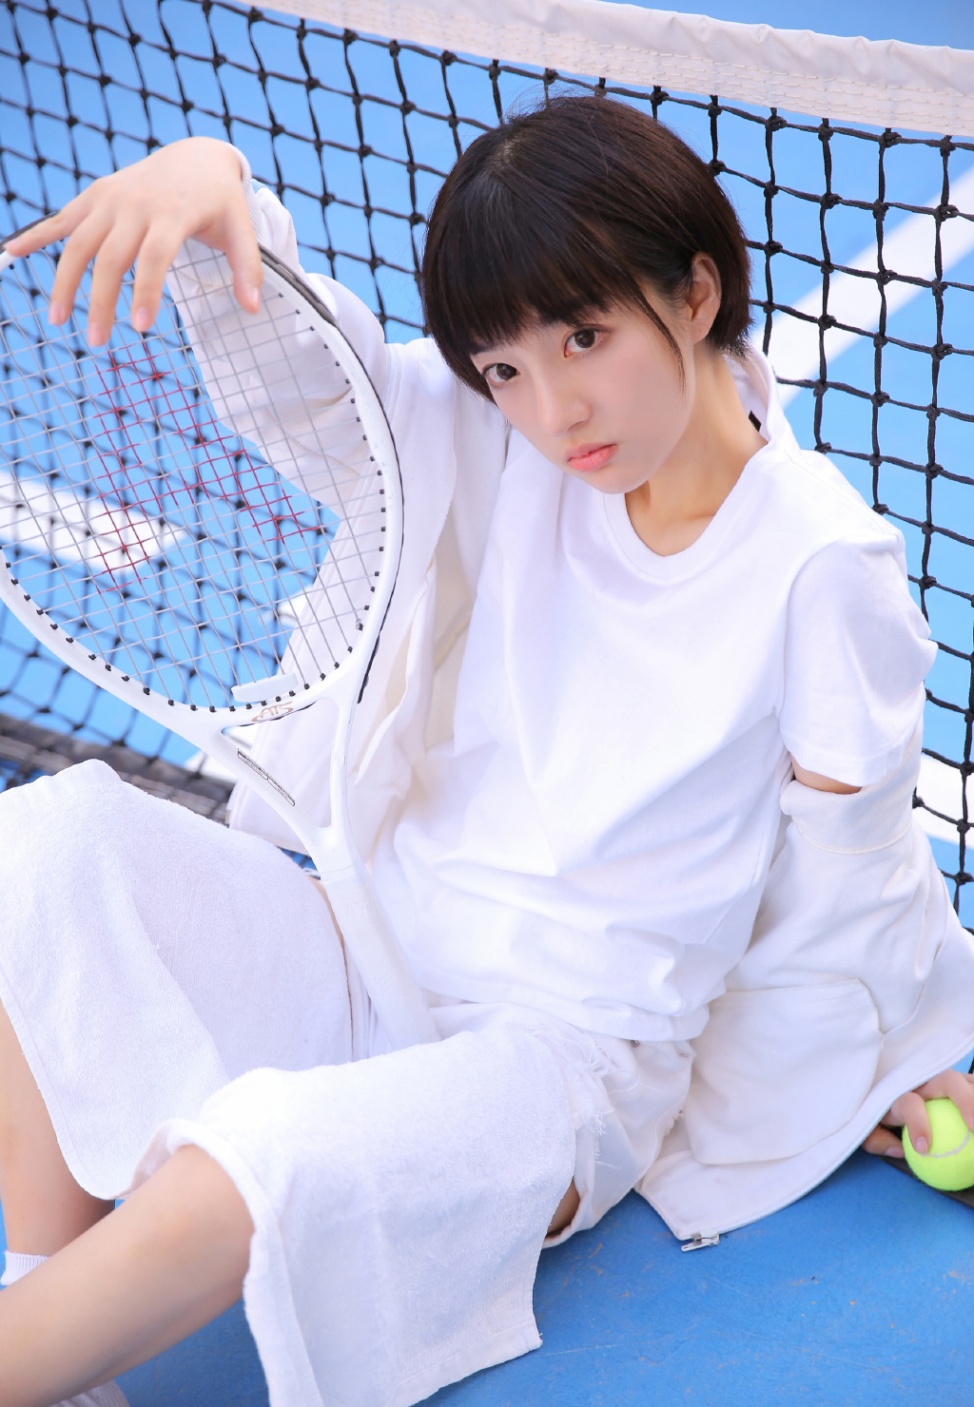 清纯学生妹室内网球场运动服写真(第4页)